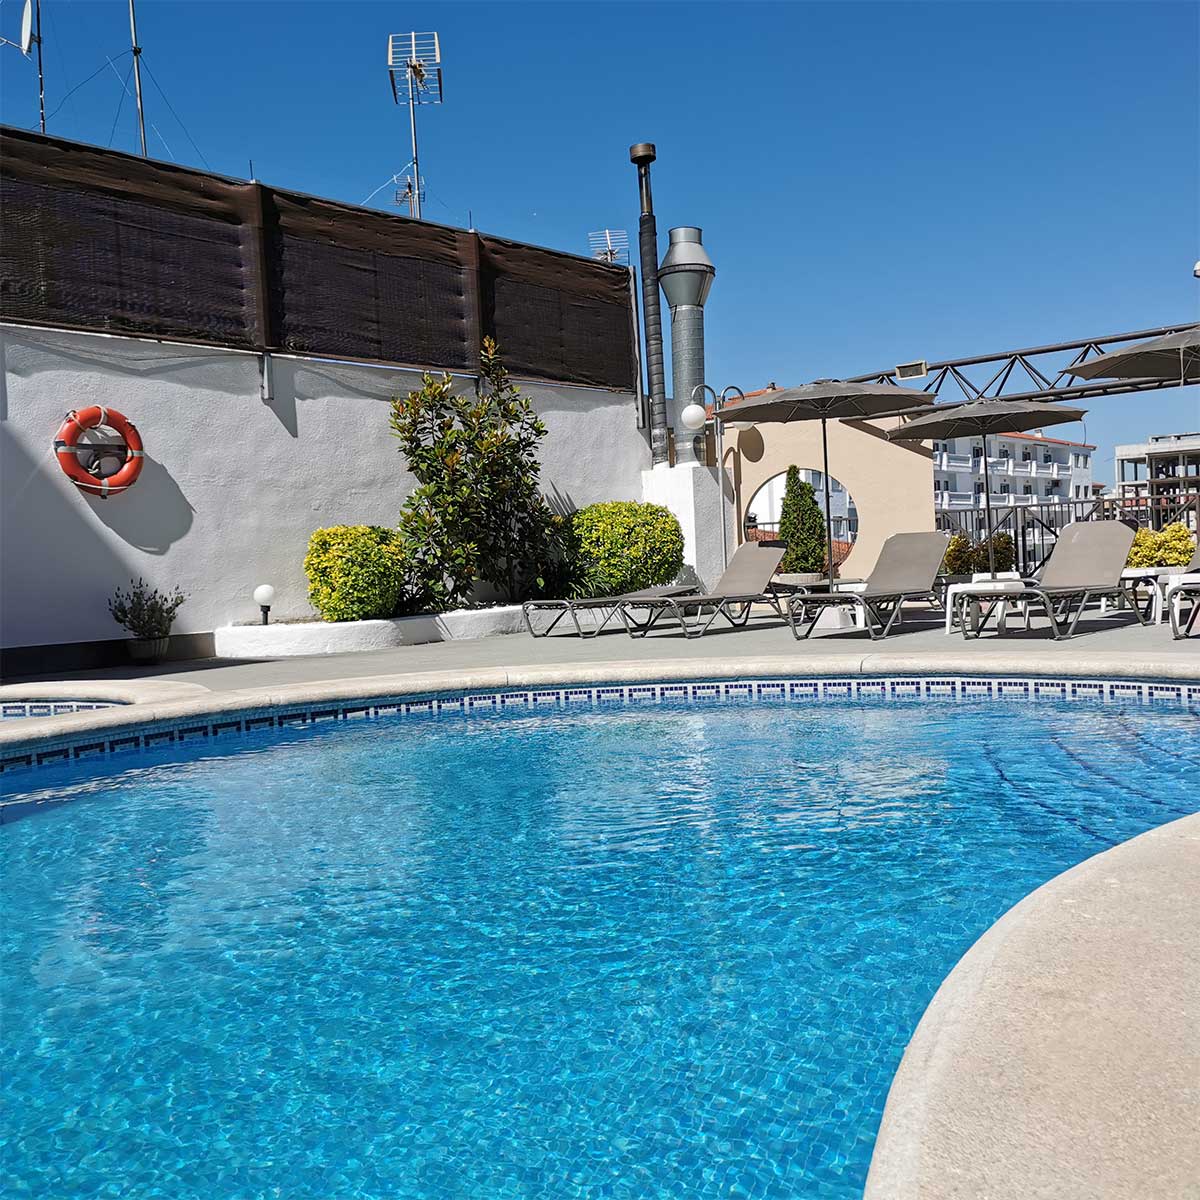 En el Hotel Petit Palau disponemos de servicio de piscina exterior y solarium